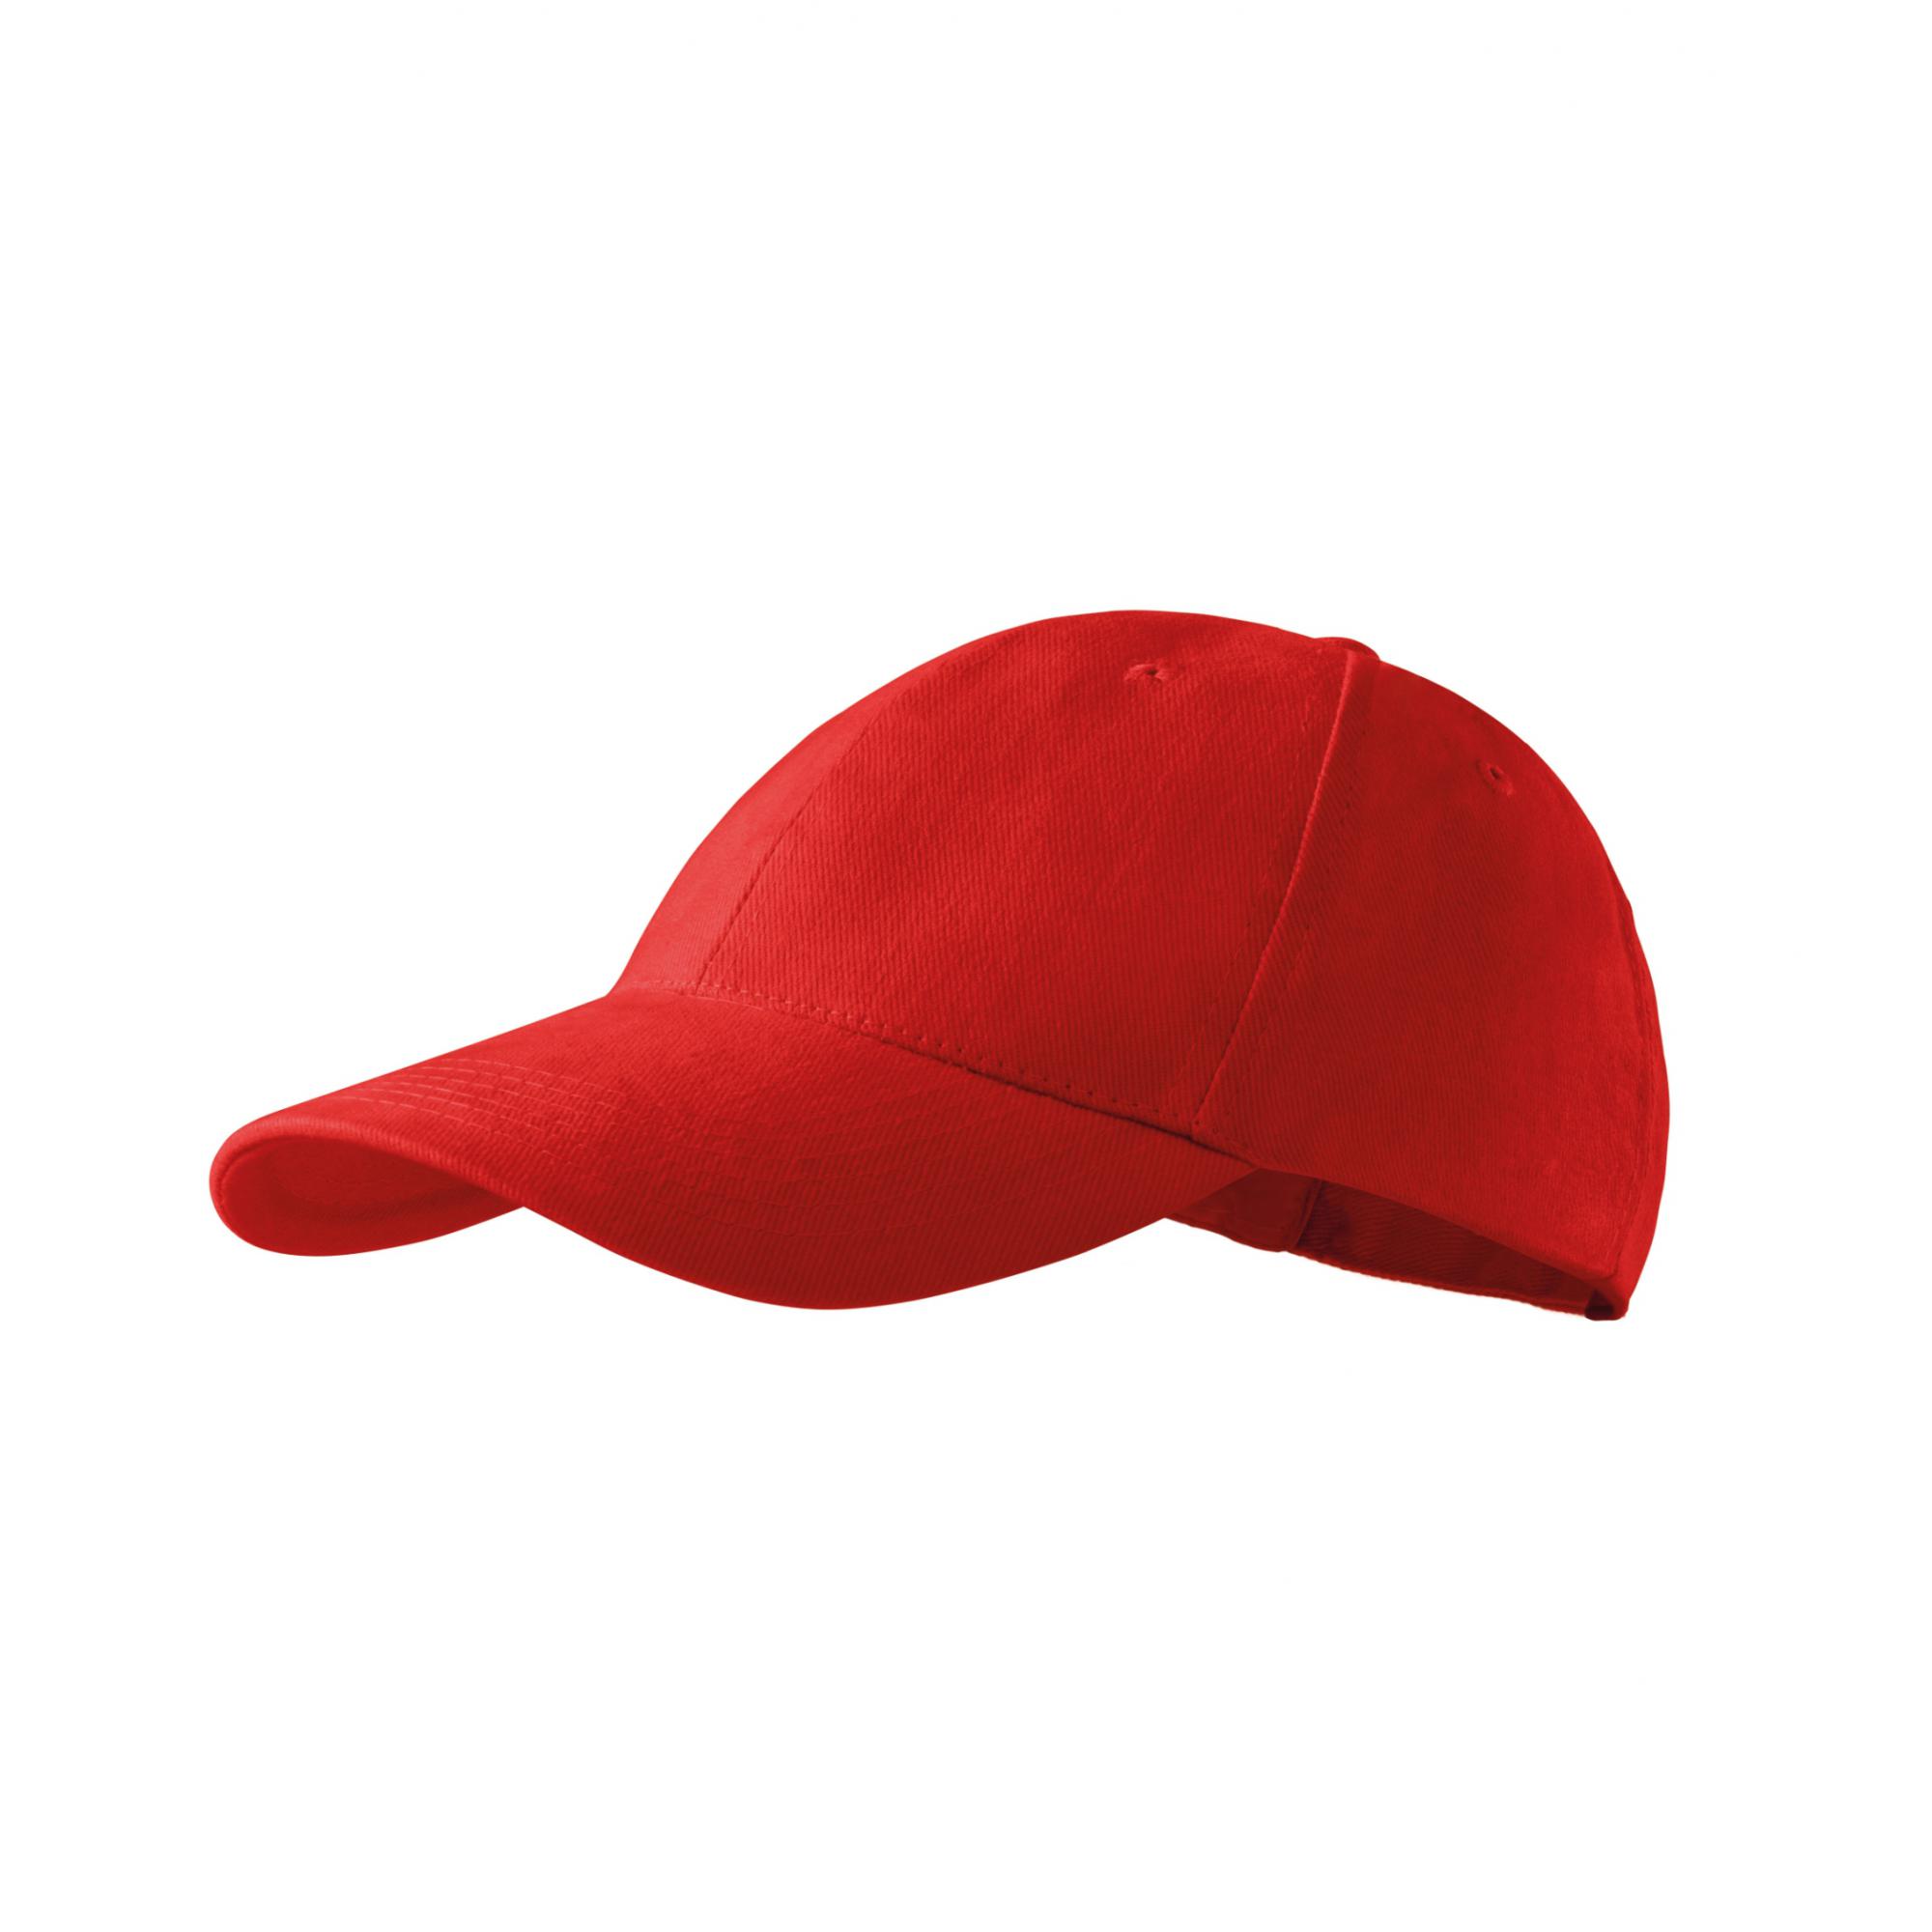 Şapcă unisex 6P 305 Rosu Marime universala